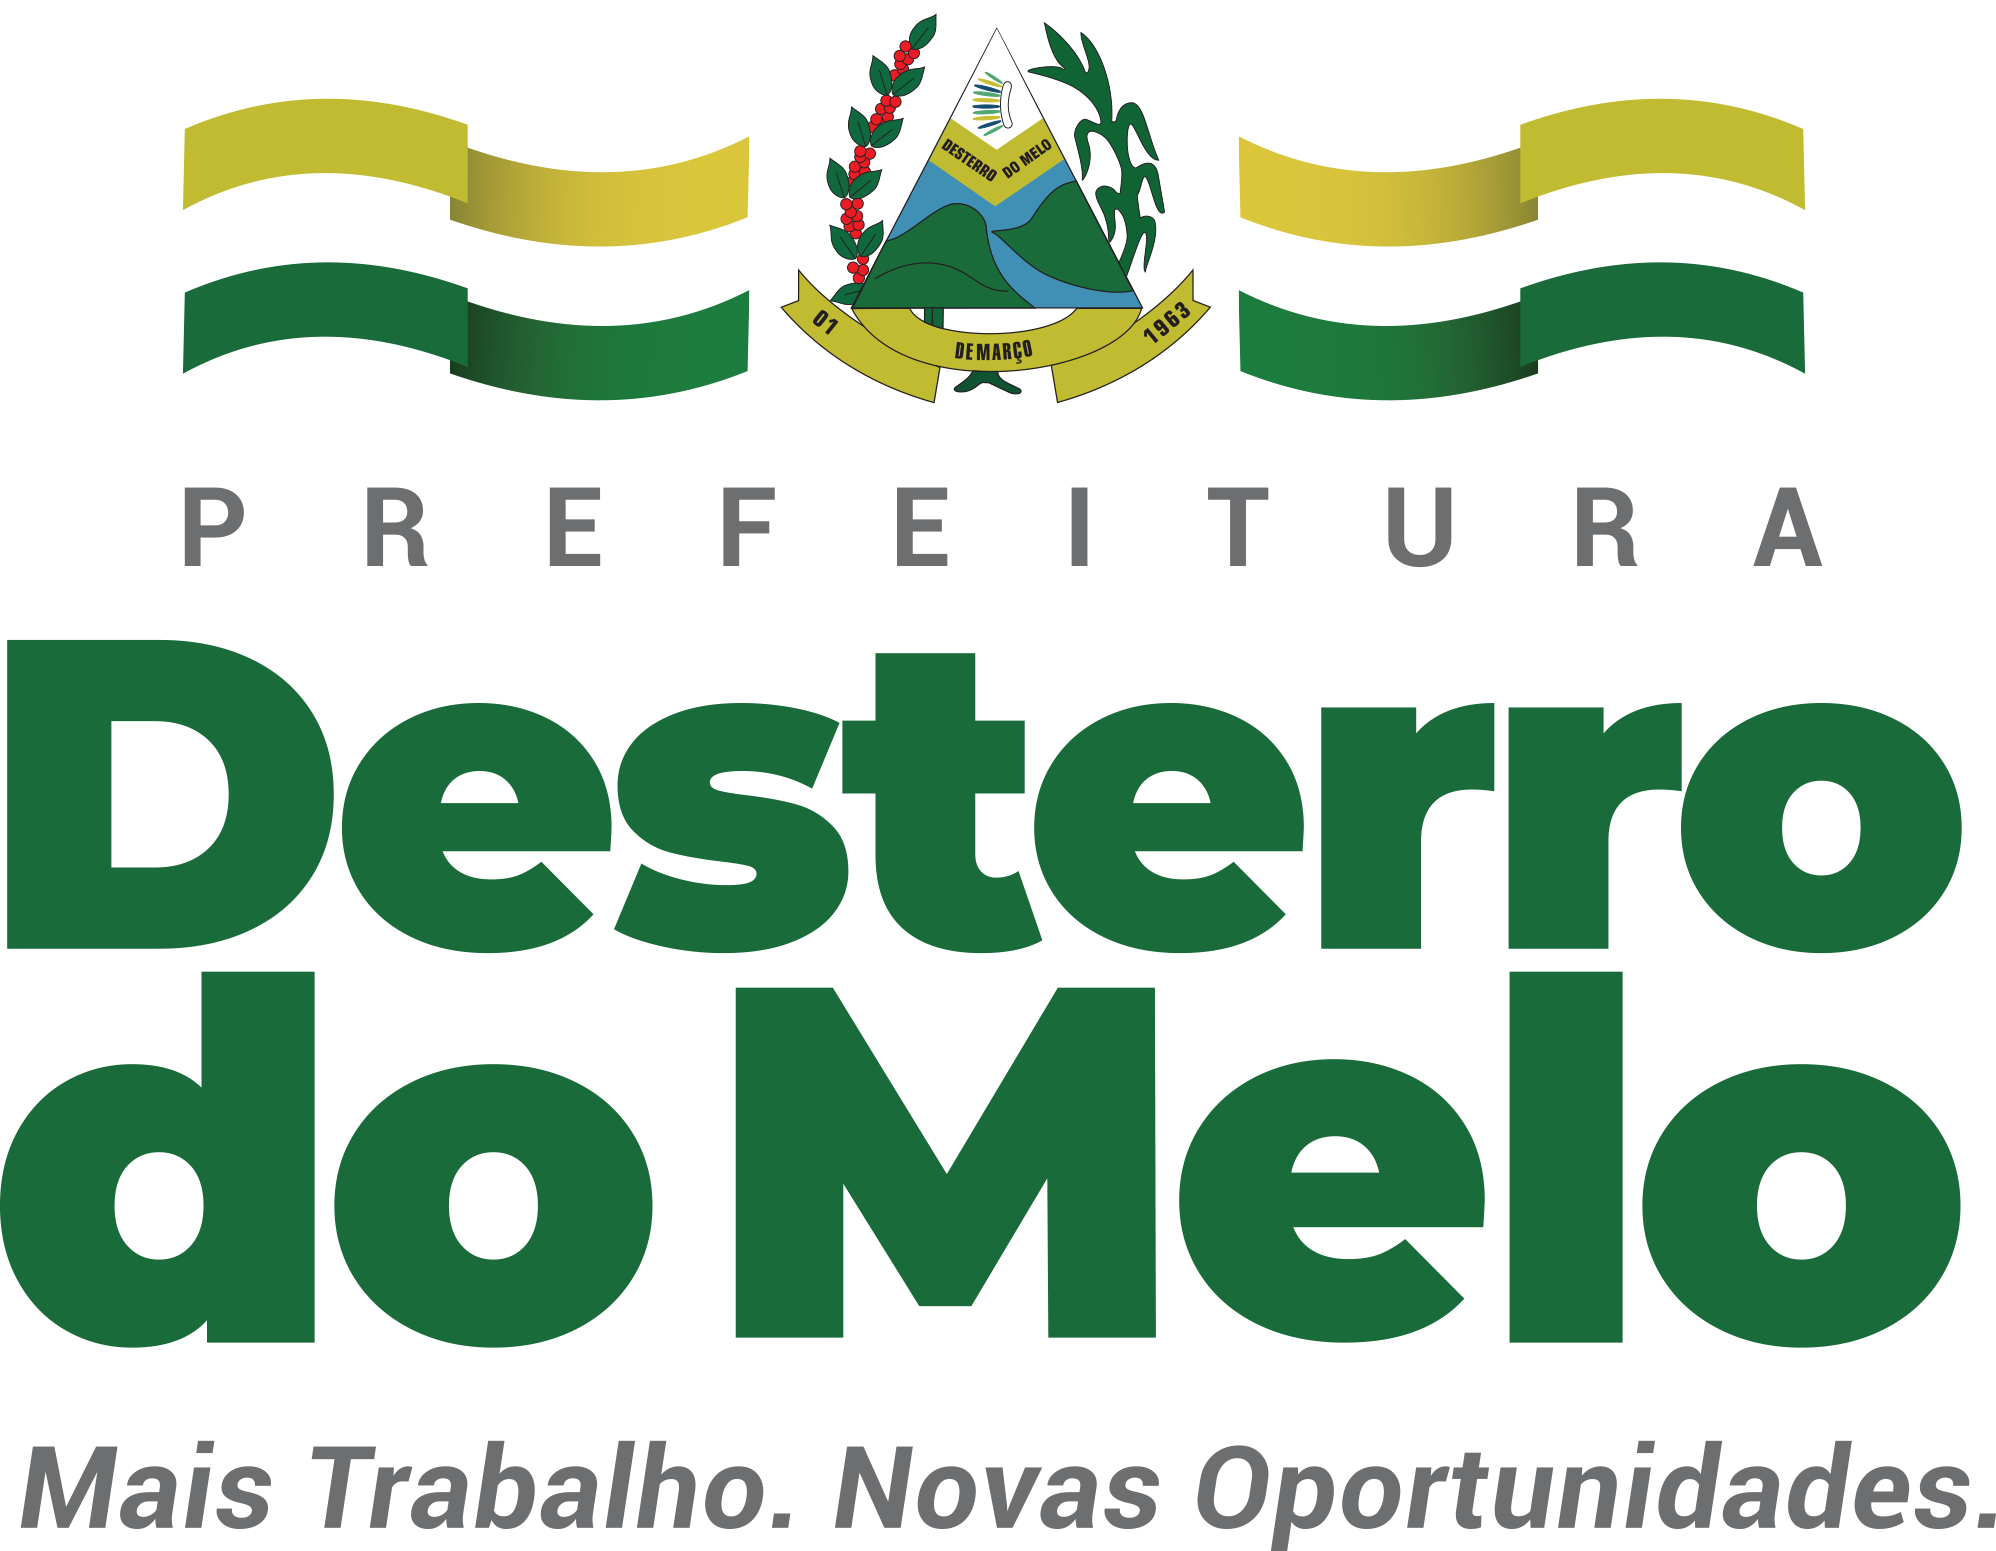 Prefeitura Municipal de Desterro do Melo - MG